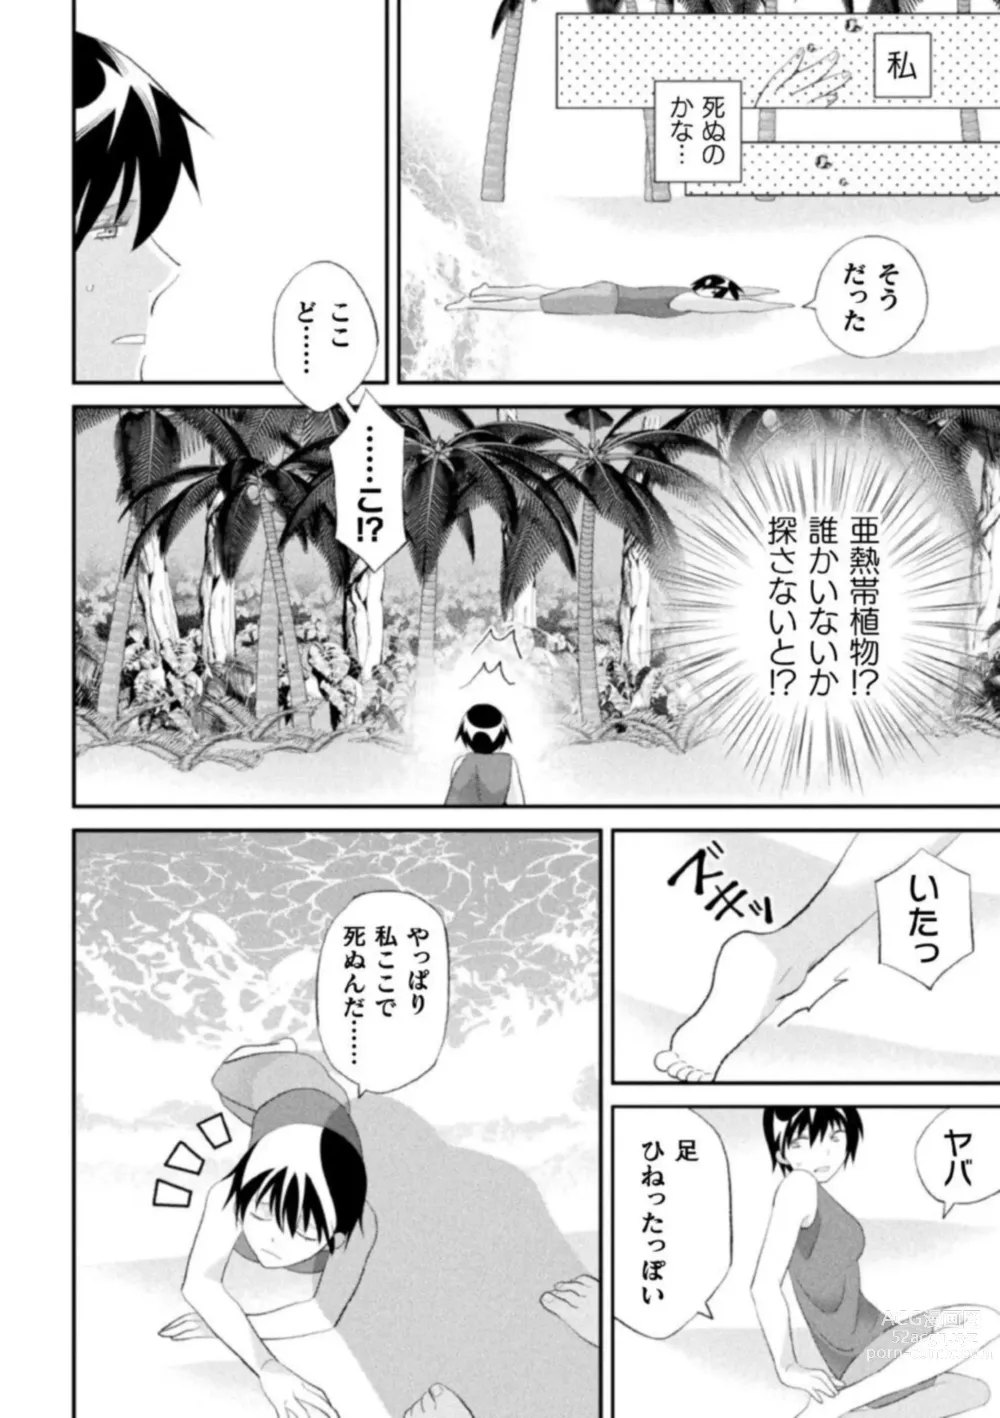 Page 14 of manga Shokora Shukureansorojīshokorashukureansorojī Docchi ga Suki? Kireina o Nīsan ni Aisare Ecchi Vol.2